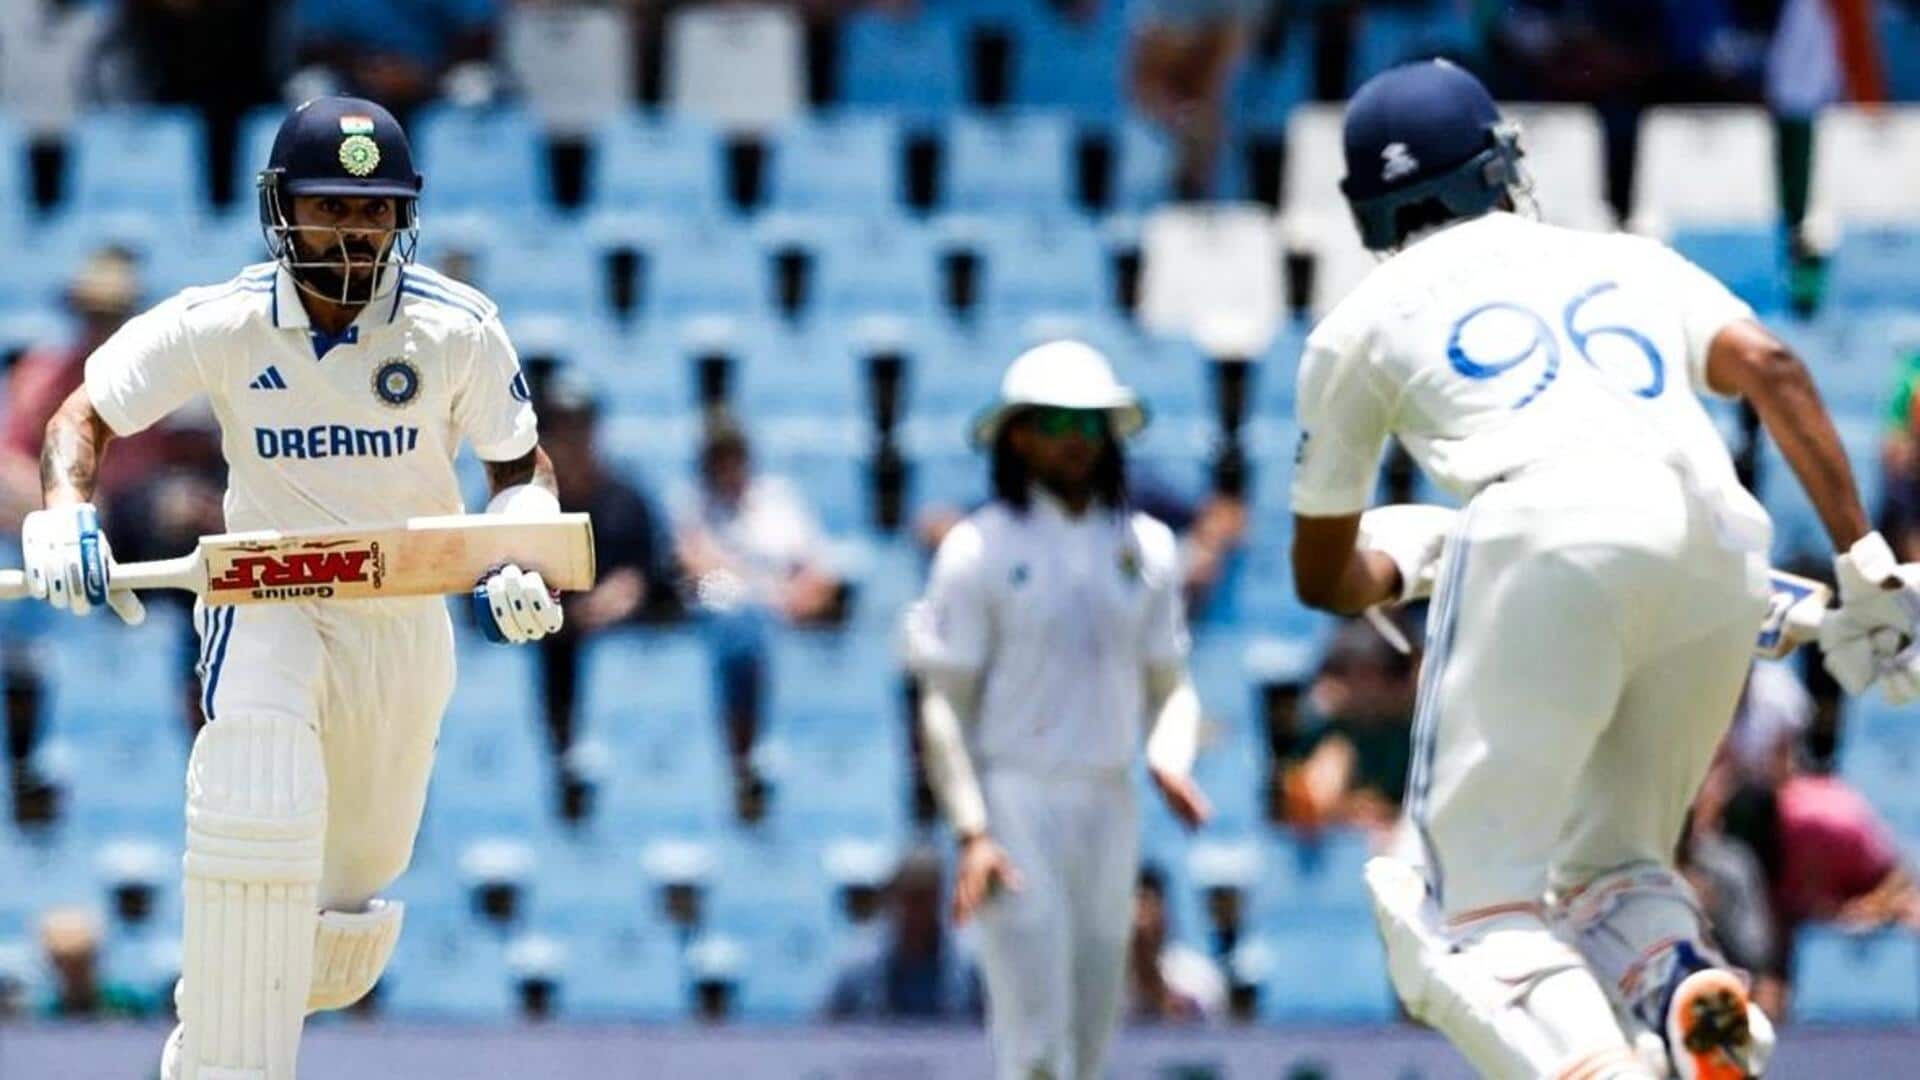 विराट कोहली विश्व टेस्ट चैंपियनशिप में सबसे ज्यादा रन बनाने वाले भारतीय बल्लेबाज बने, जानिए आंकड़े